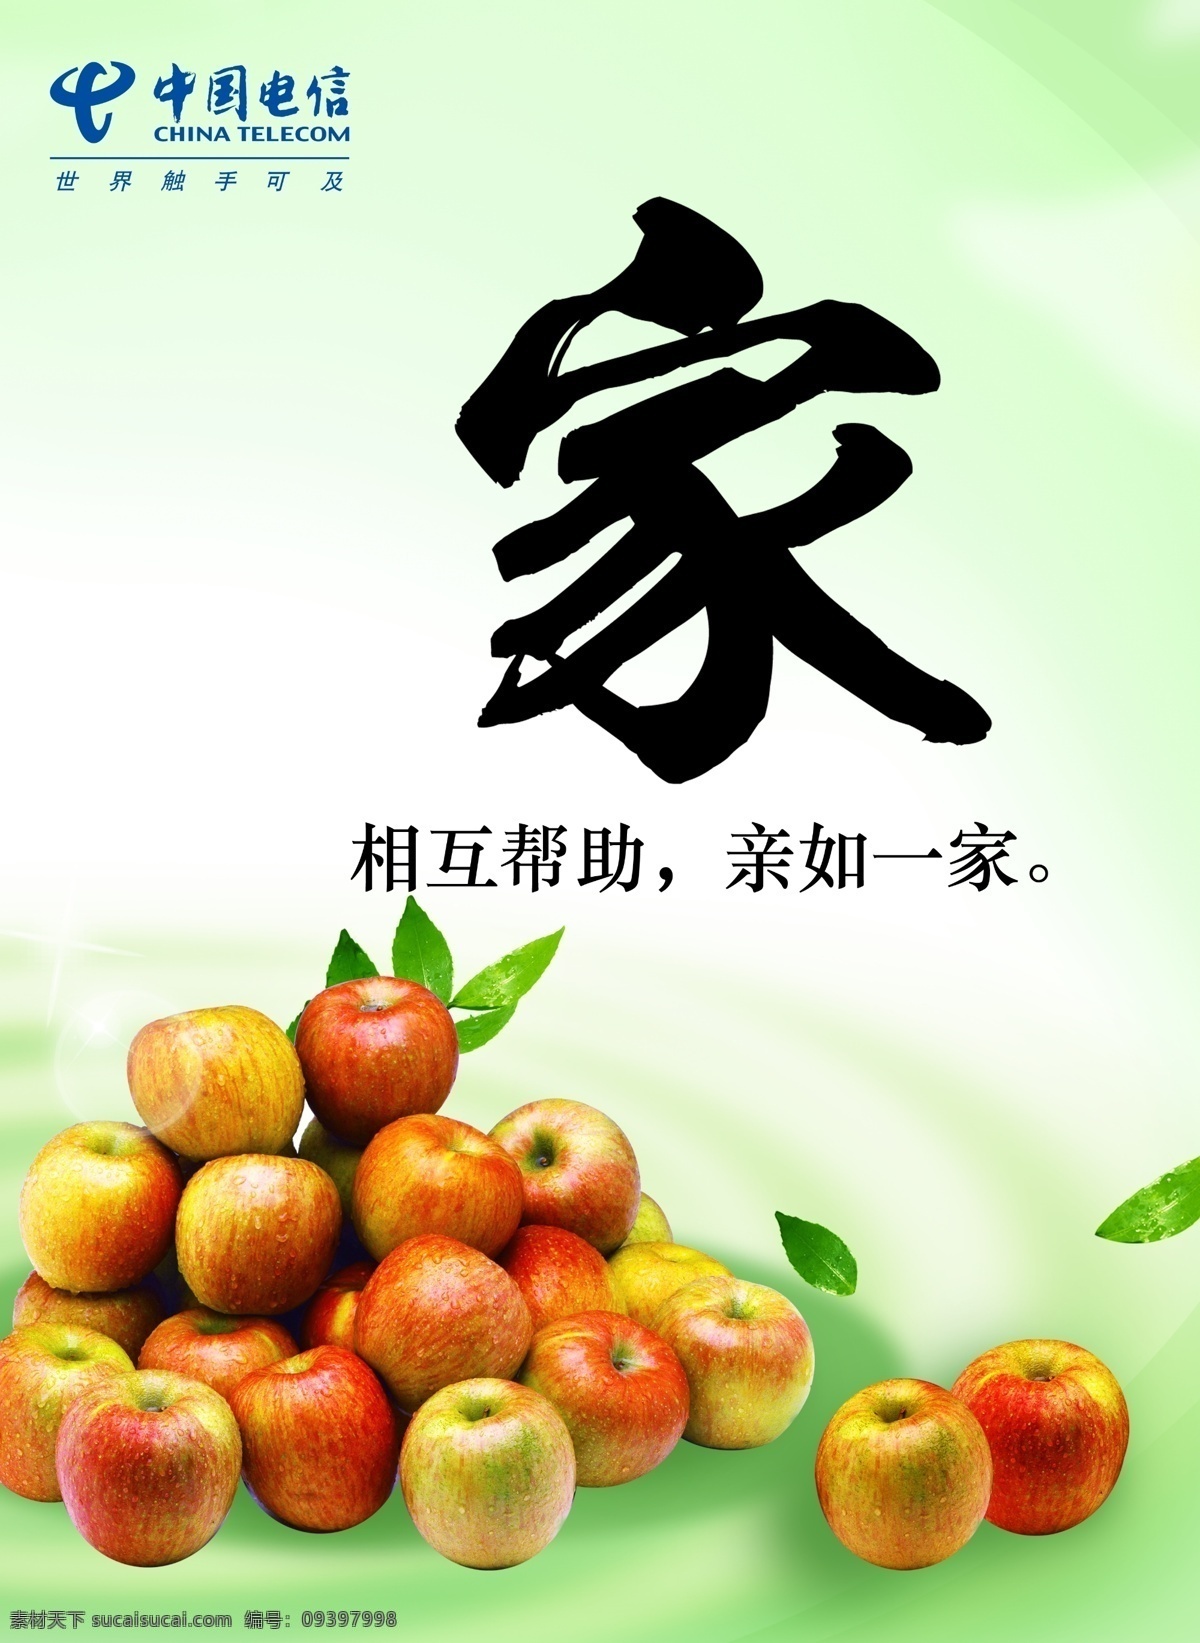 分层 家 家文化 苹果 食堂文化 源文件 中国电信 文化 模板下载 相互帮助 亲如一家 矢量图 现代科技